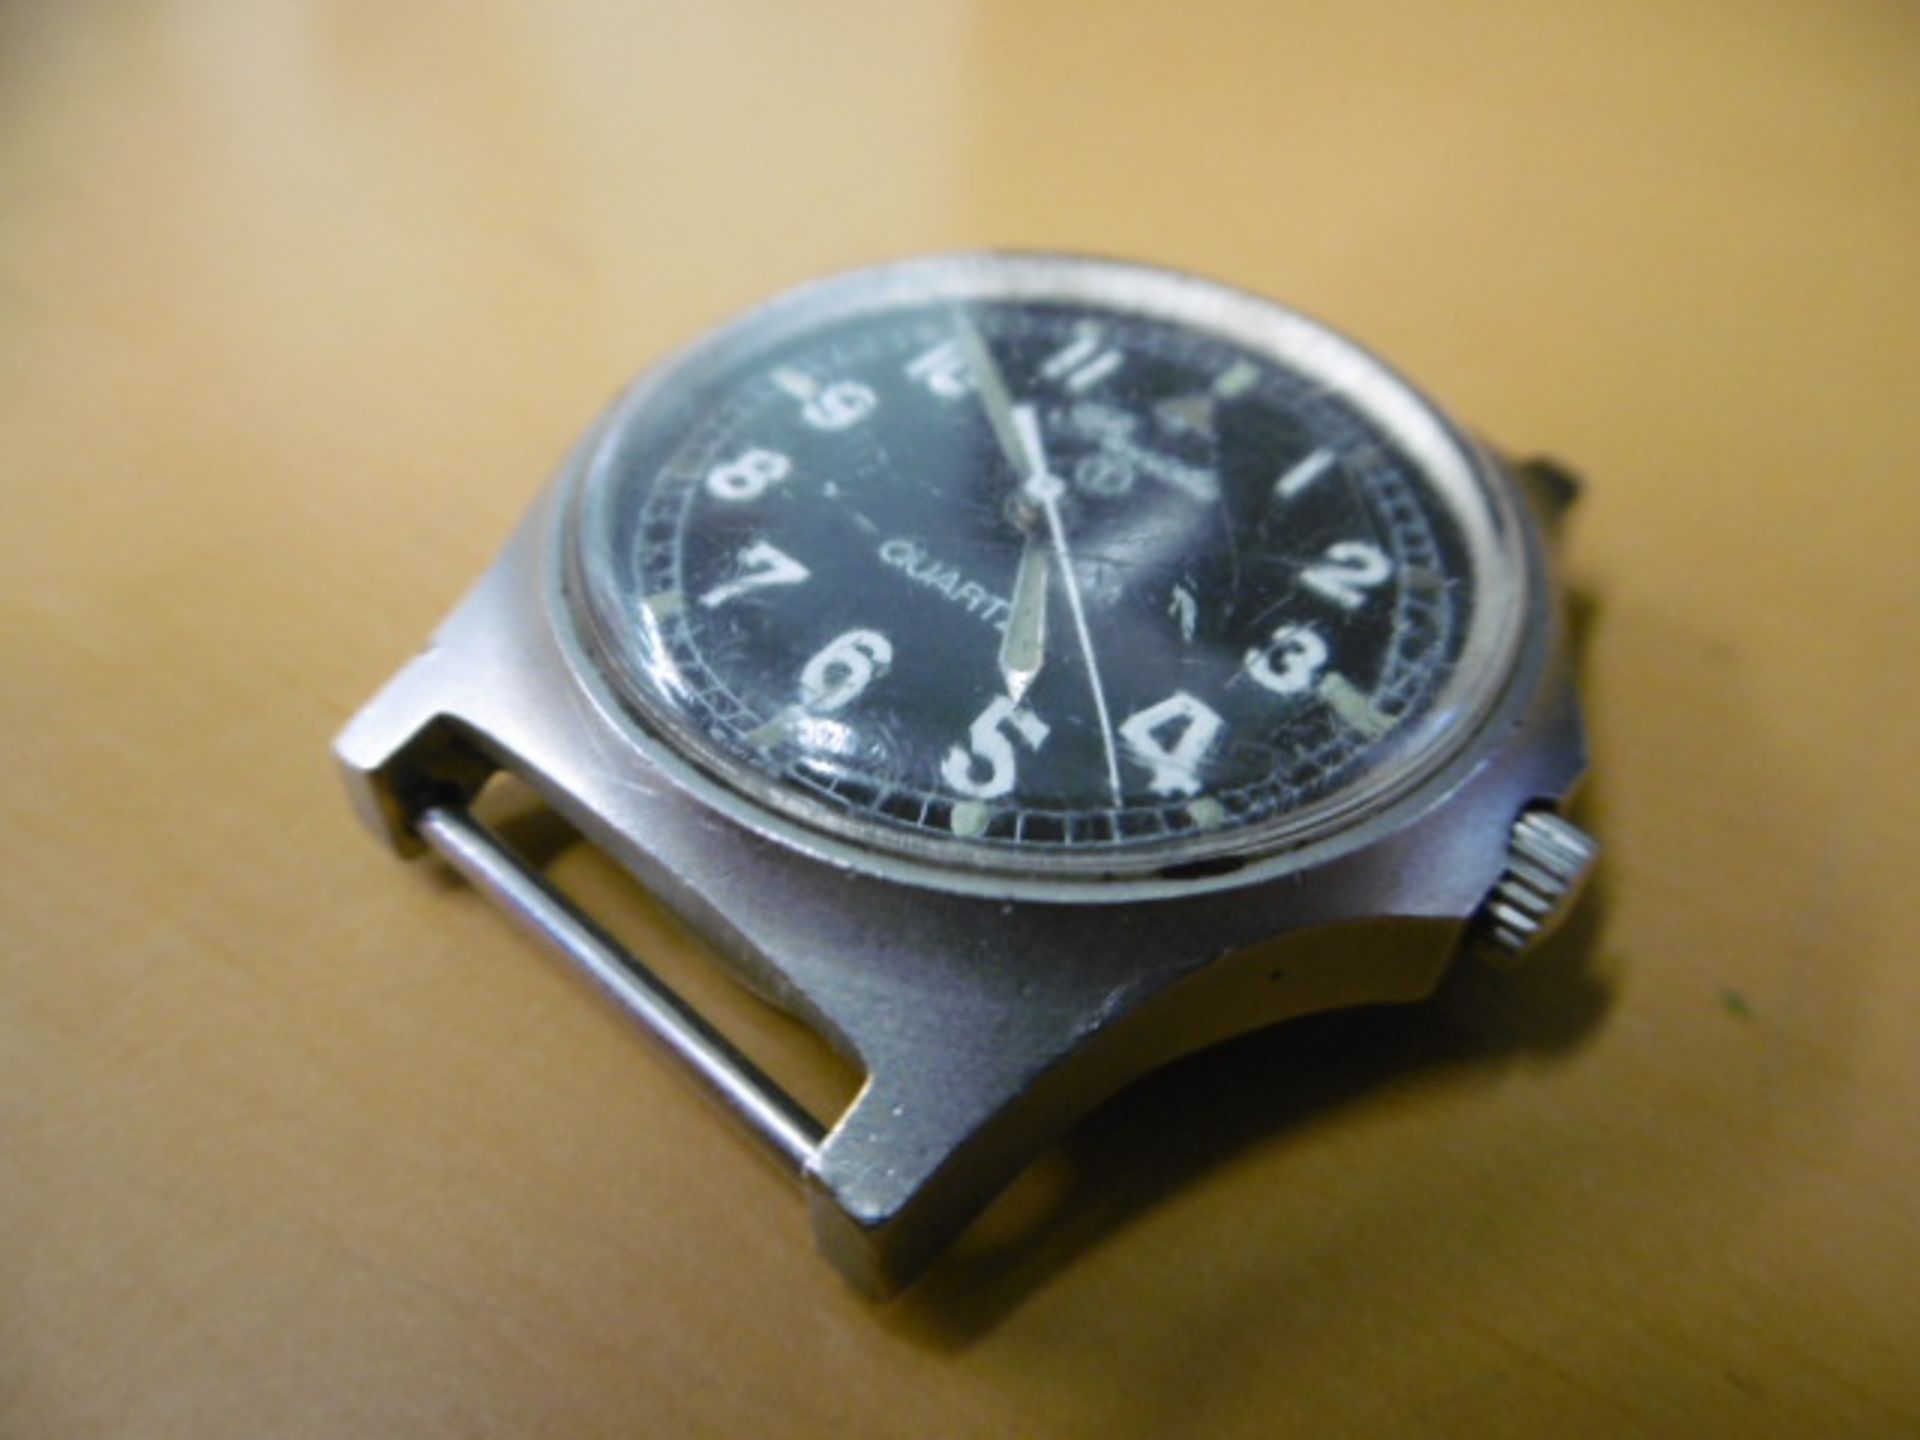 2 x Precista quartz wrist watches - Falklands Issue - Image 3 of 9